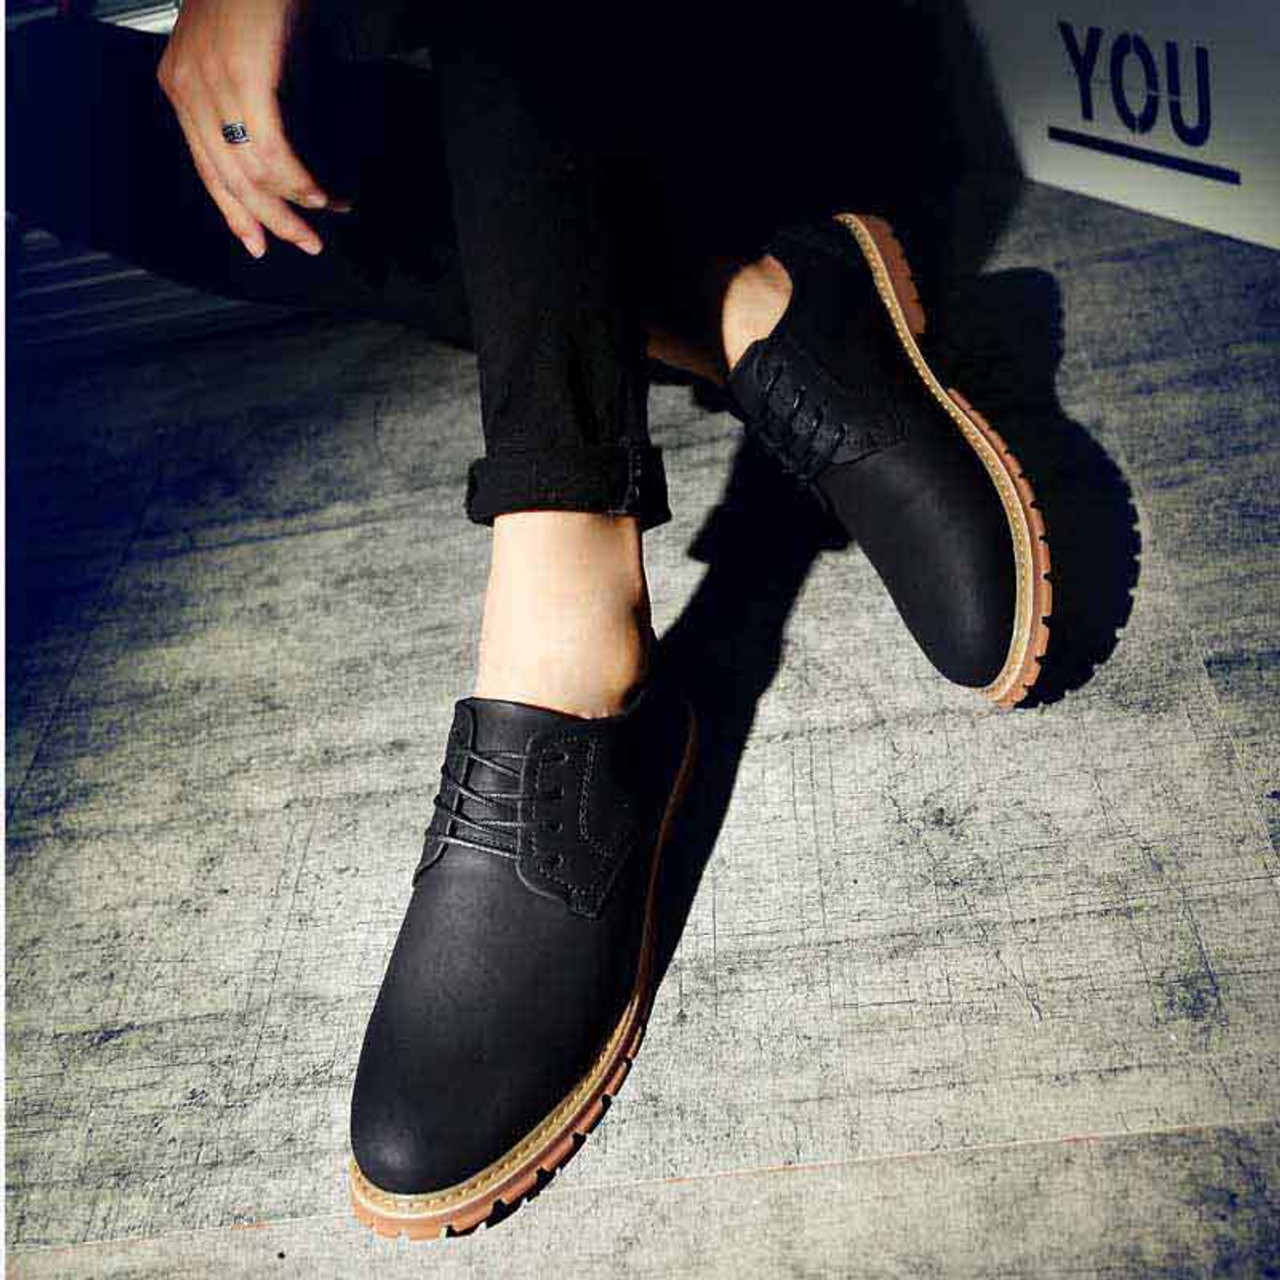 Black retro leather derby dress shoe | Mens dress shoes online 1401MS